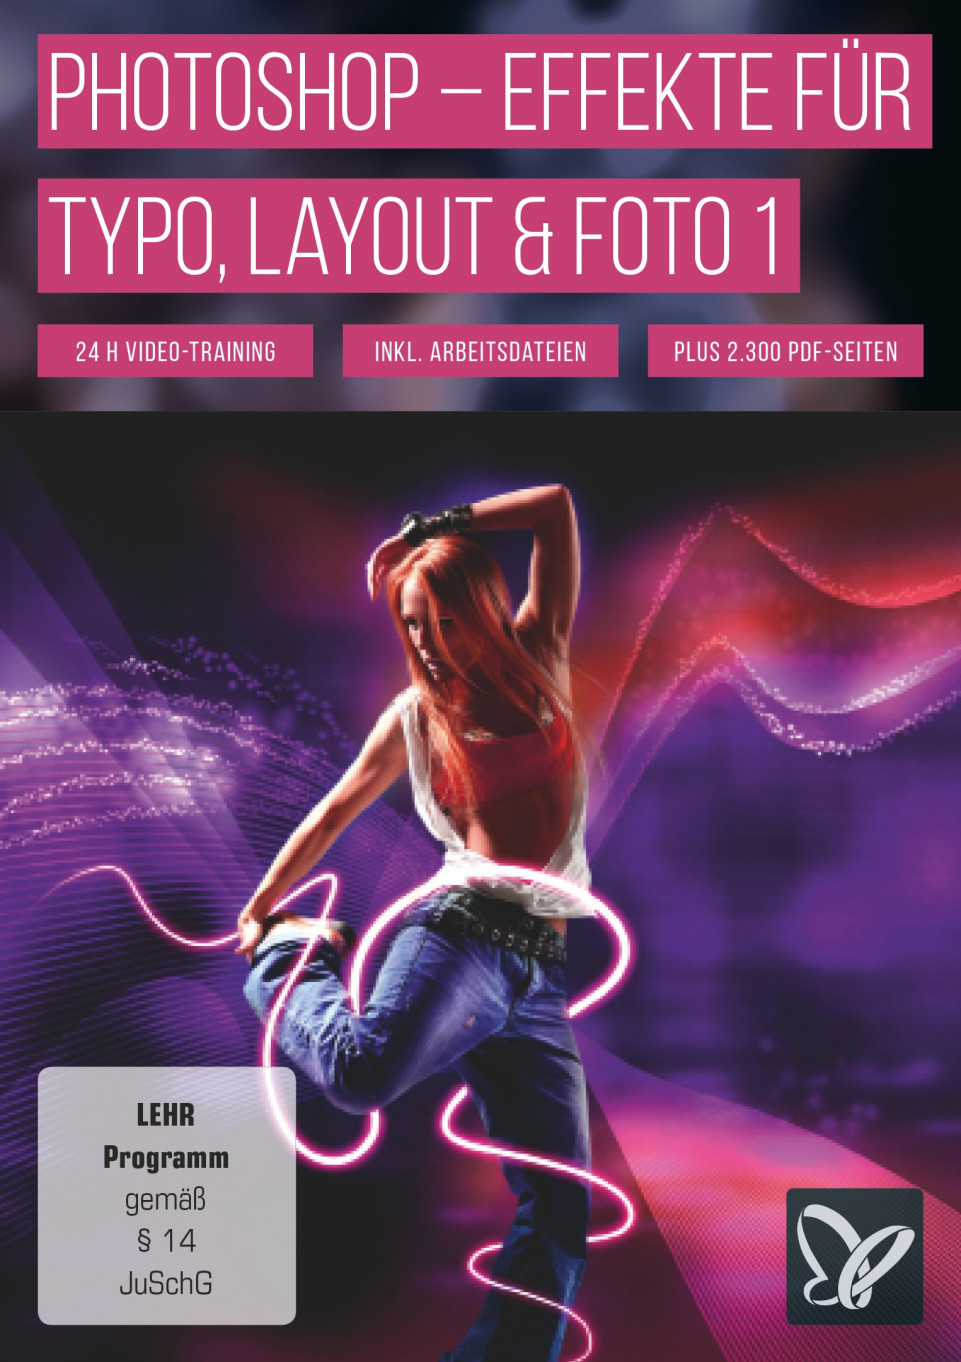 Photoshop-Workshop-DVD - Effekte für Typo, Layout & Foto - Vol. 1